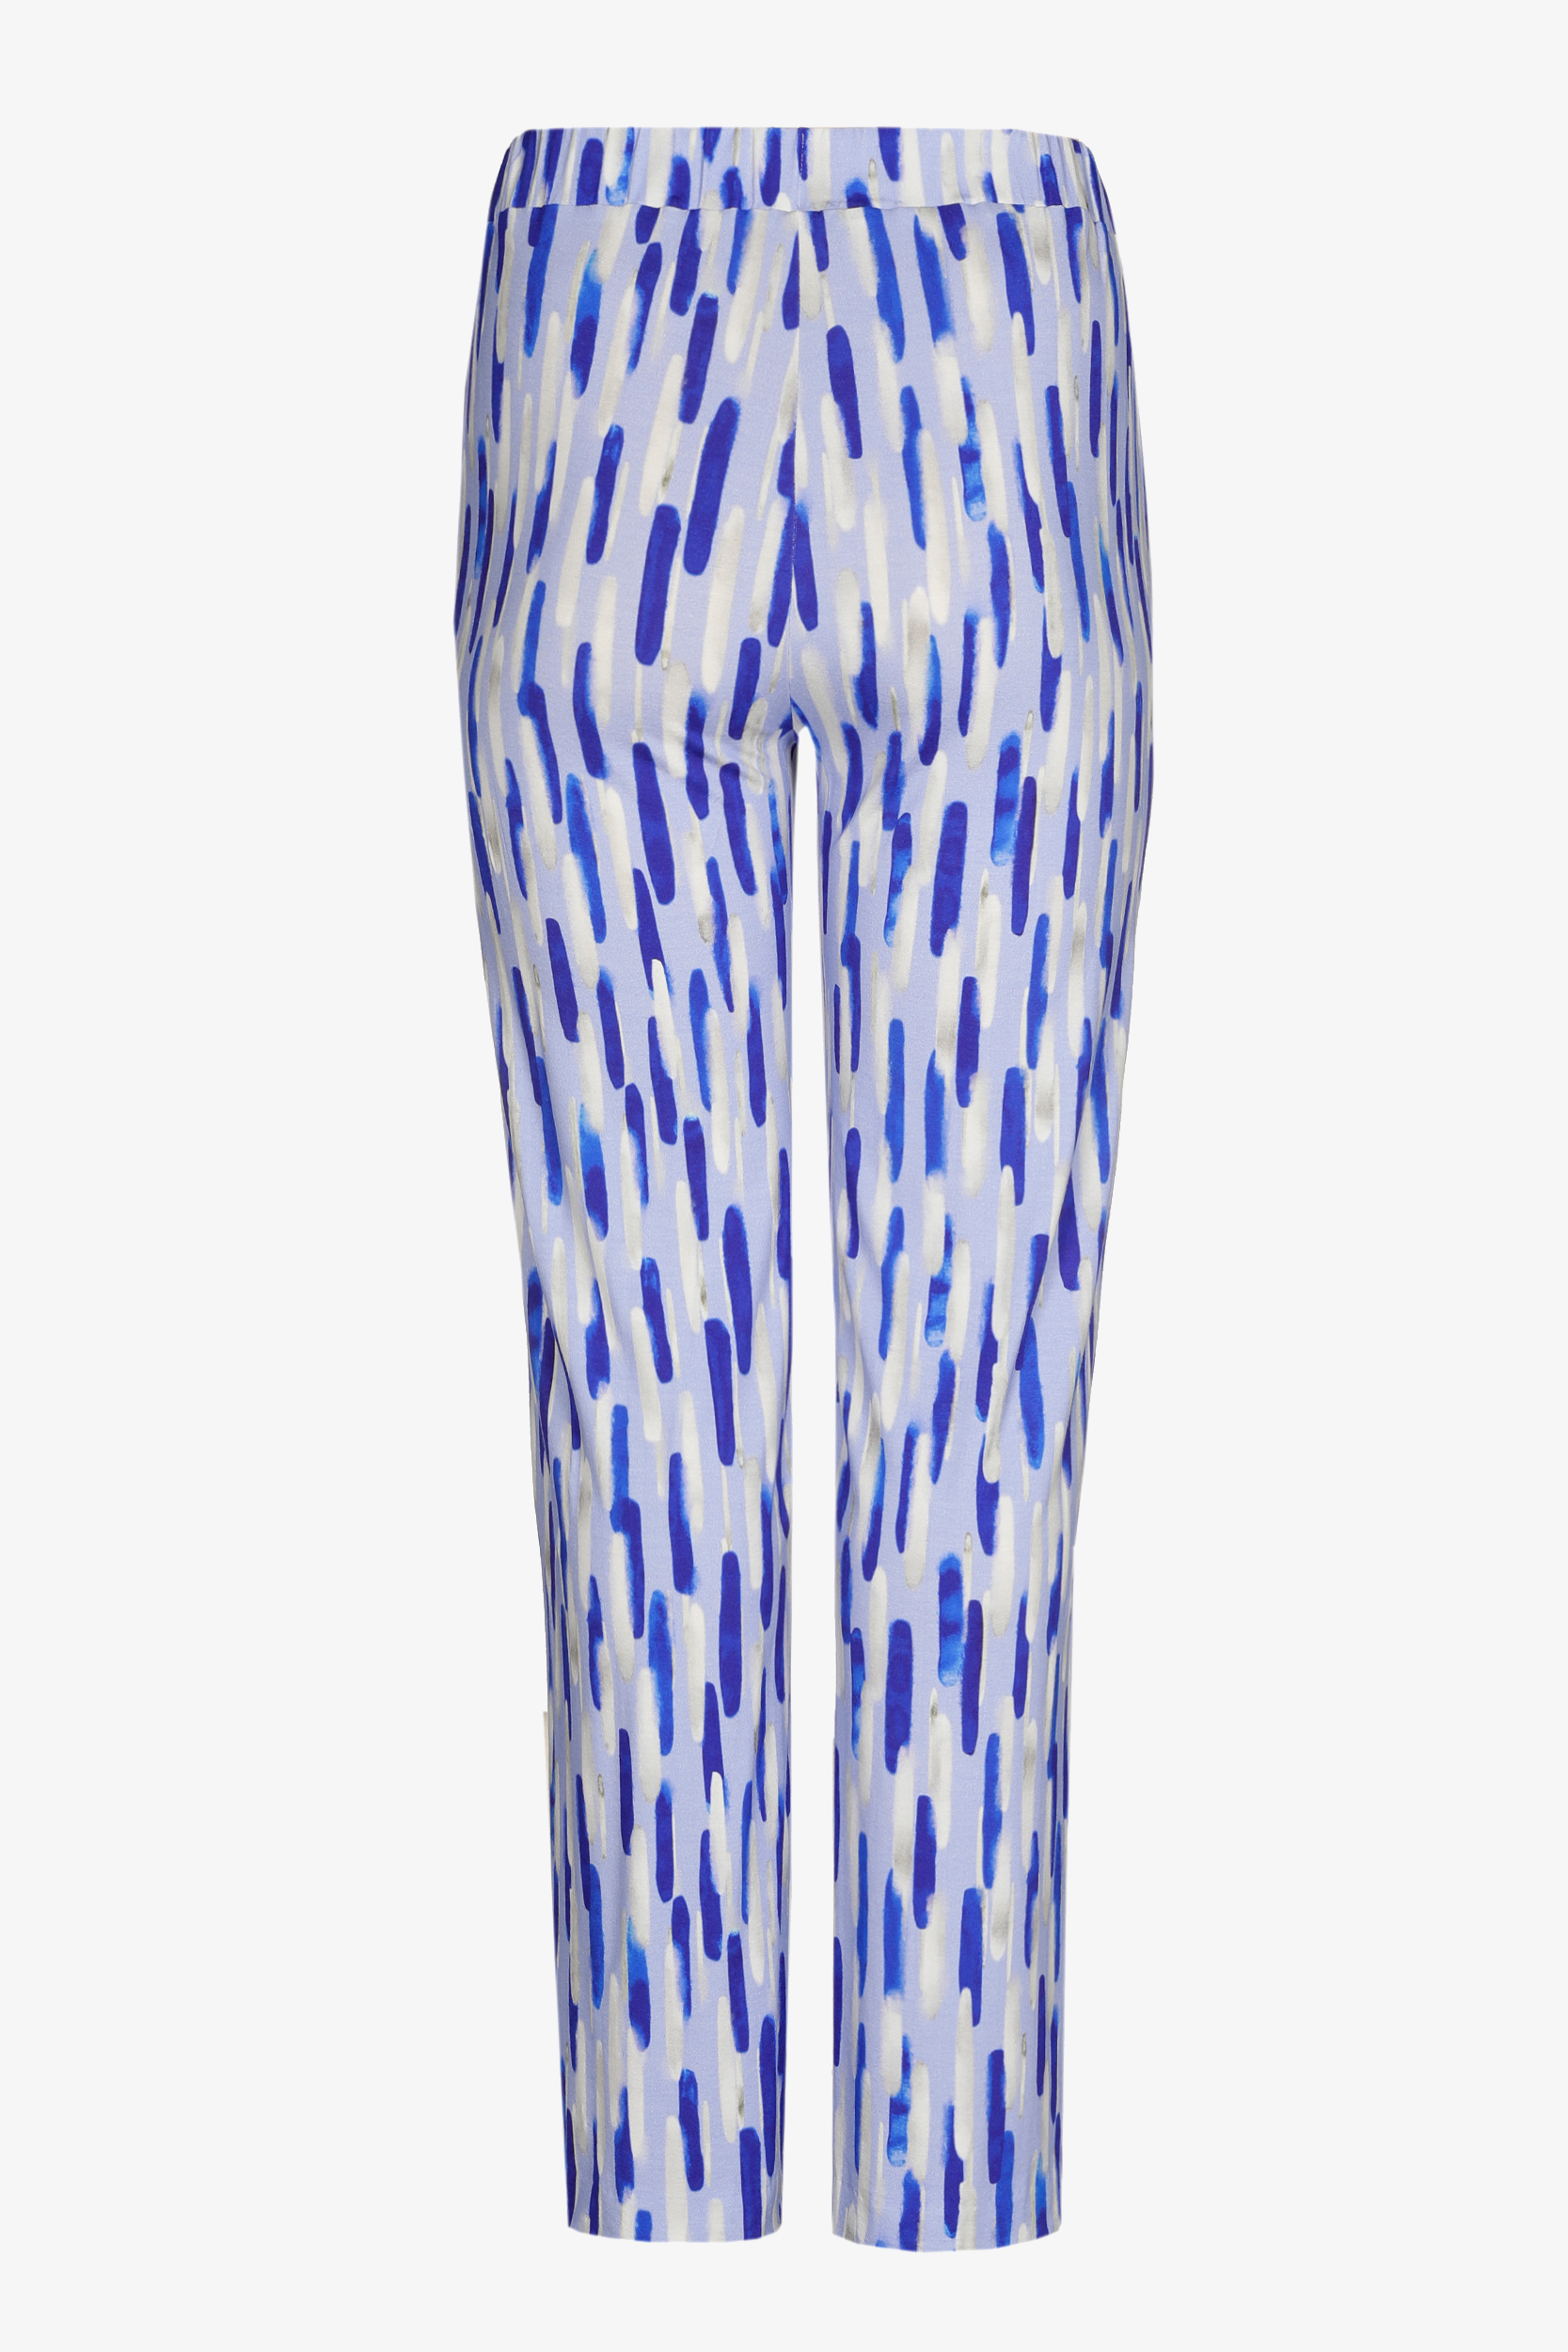 Pantalon avec imprimé aquarelle conçu en interne